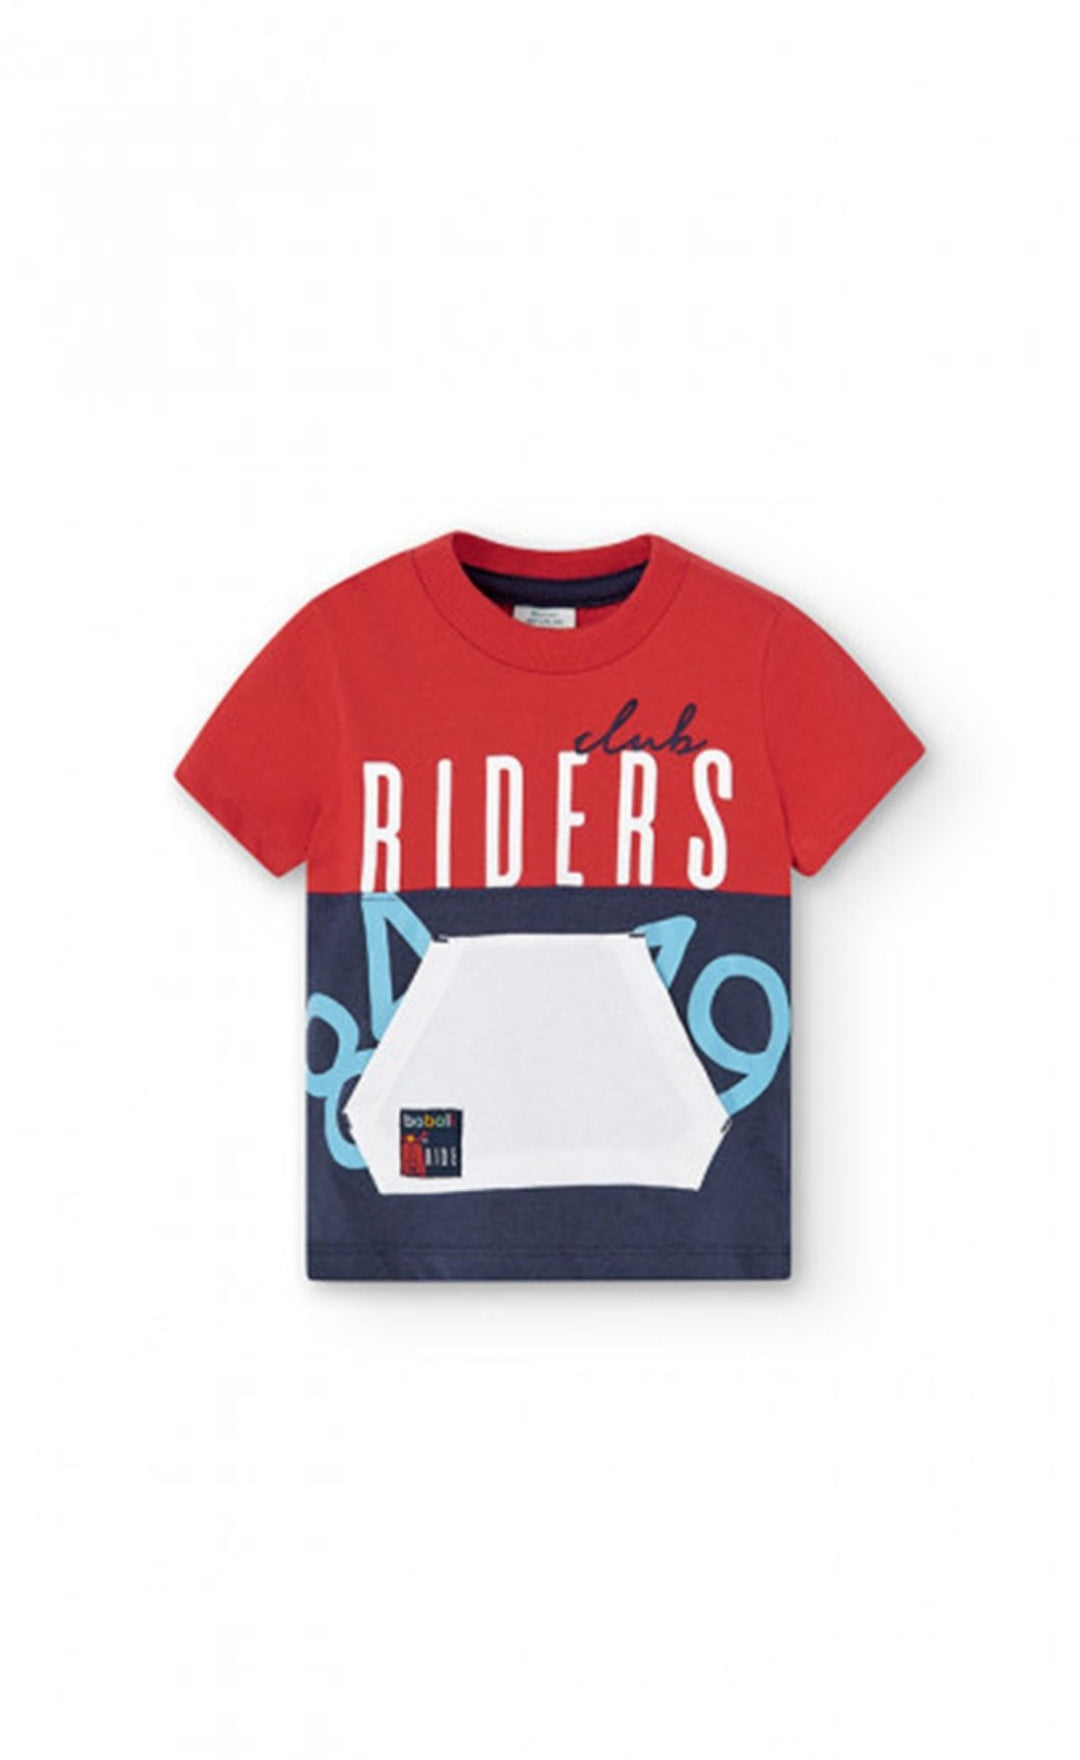 Maglietta in cotone per bambino "riders"